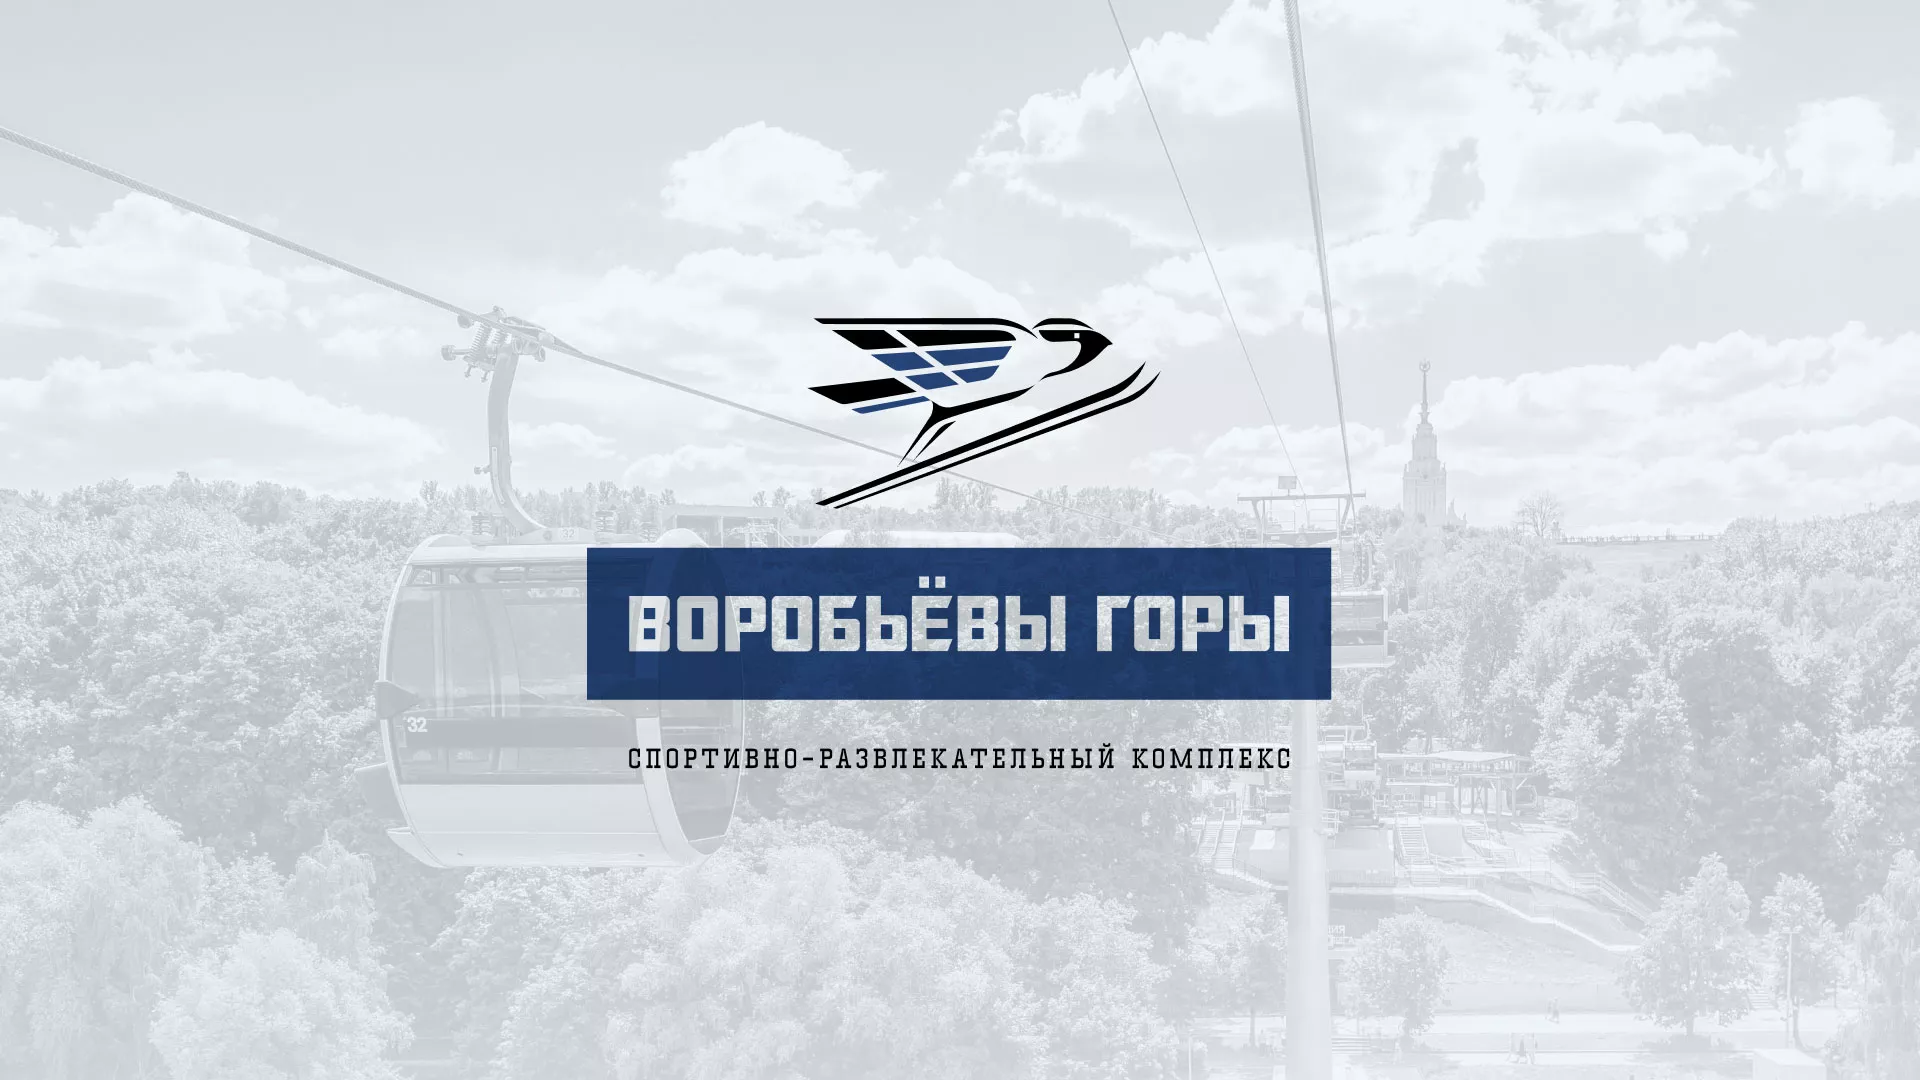 Разработка сайта в Спасске-Дальнем для спортивно-развлекательного комплекса «Воробьёвы горы»